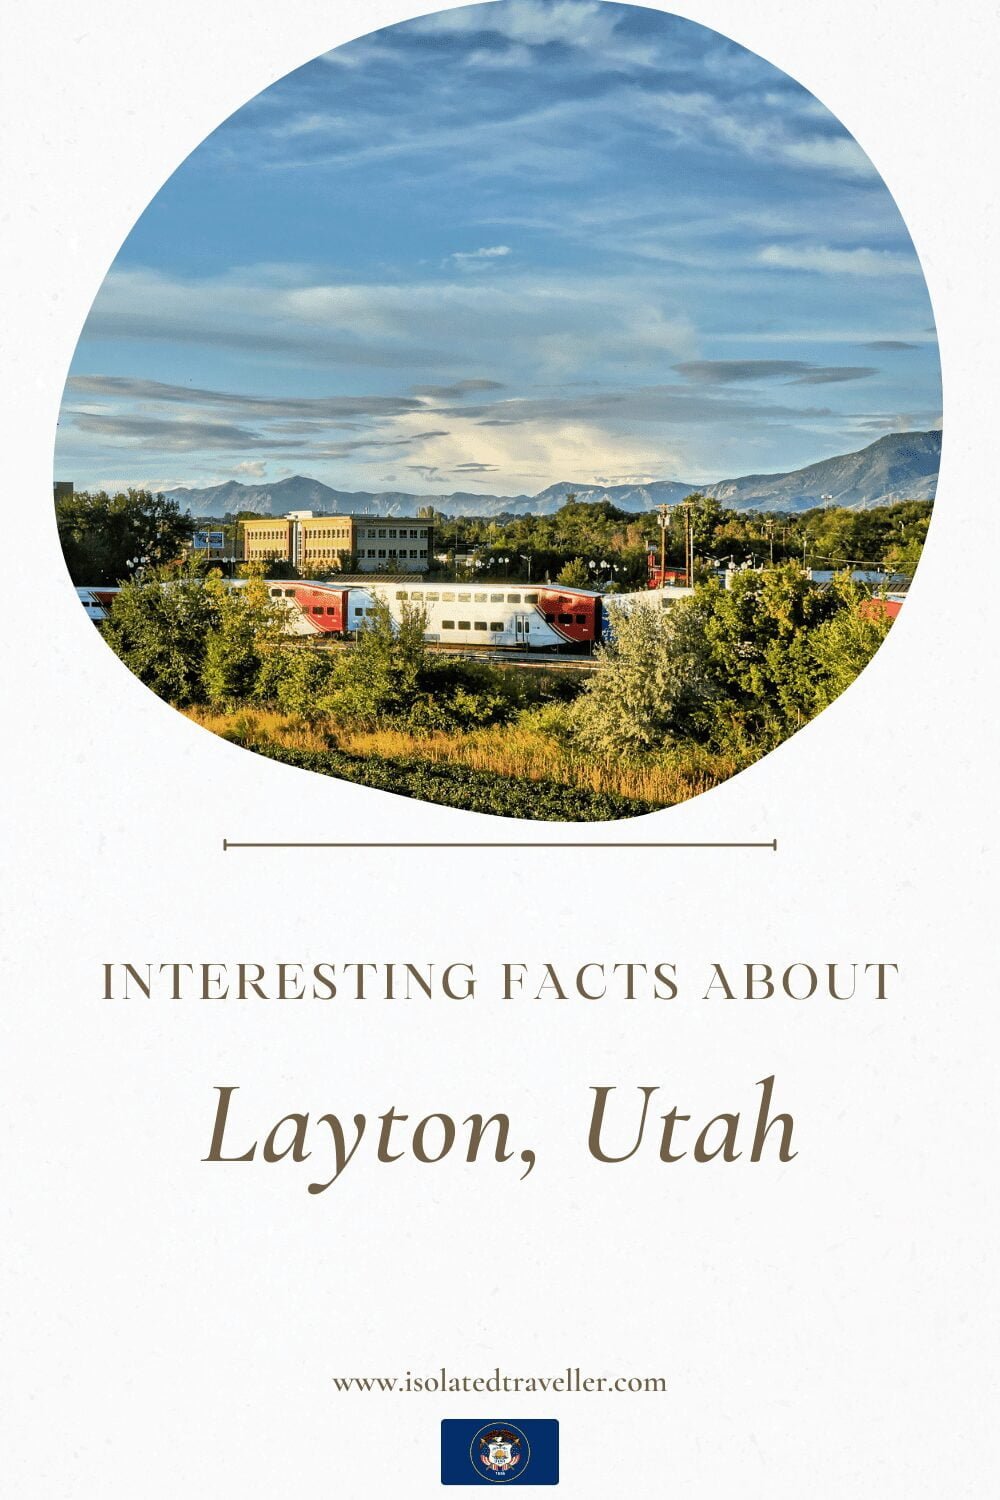 Facts About Layton, Utah